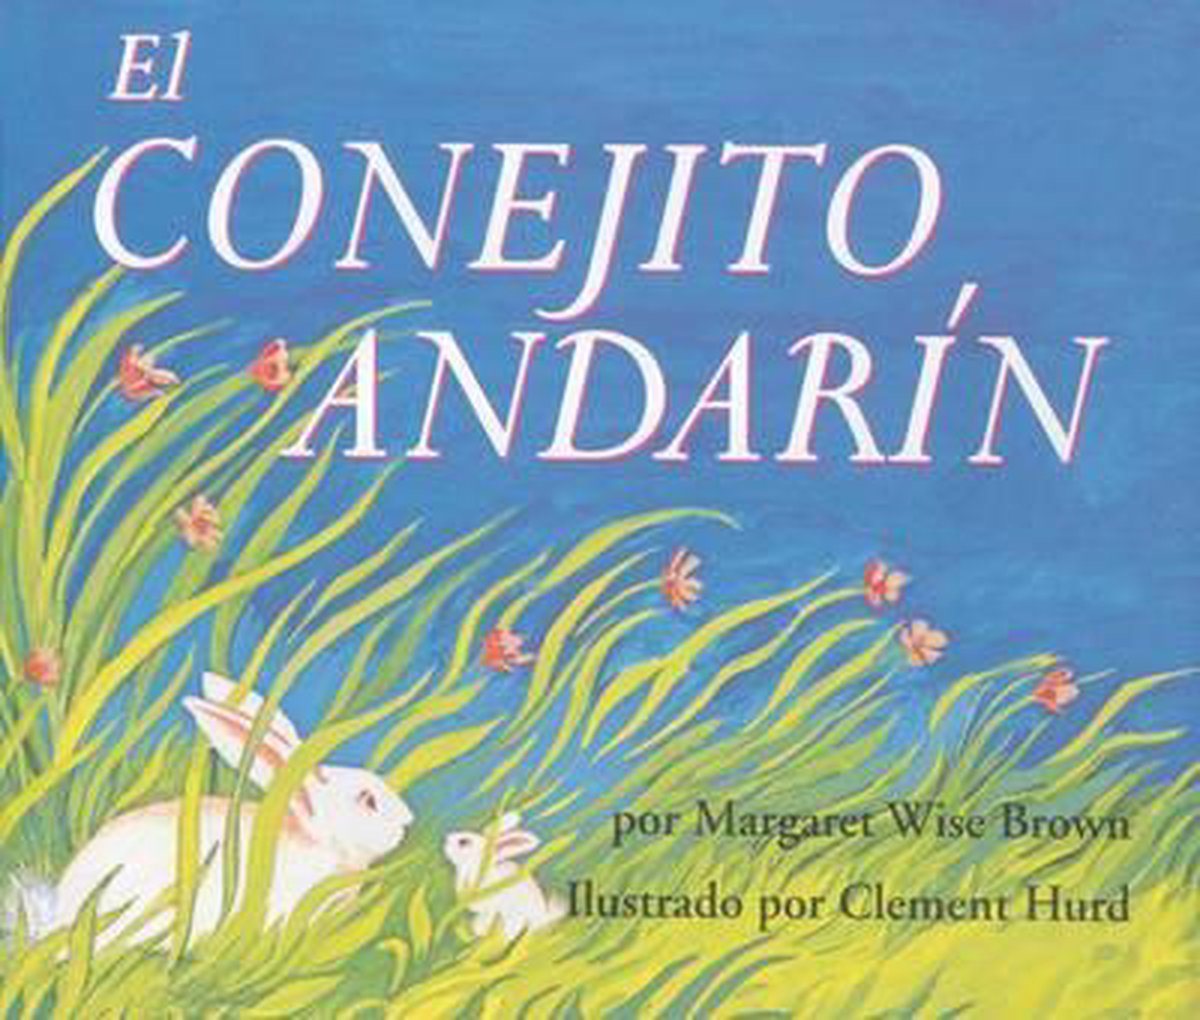 El conejito andarin / The Runaway Bunny - Margaret Wise Brown